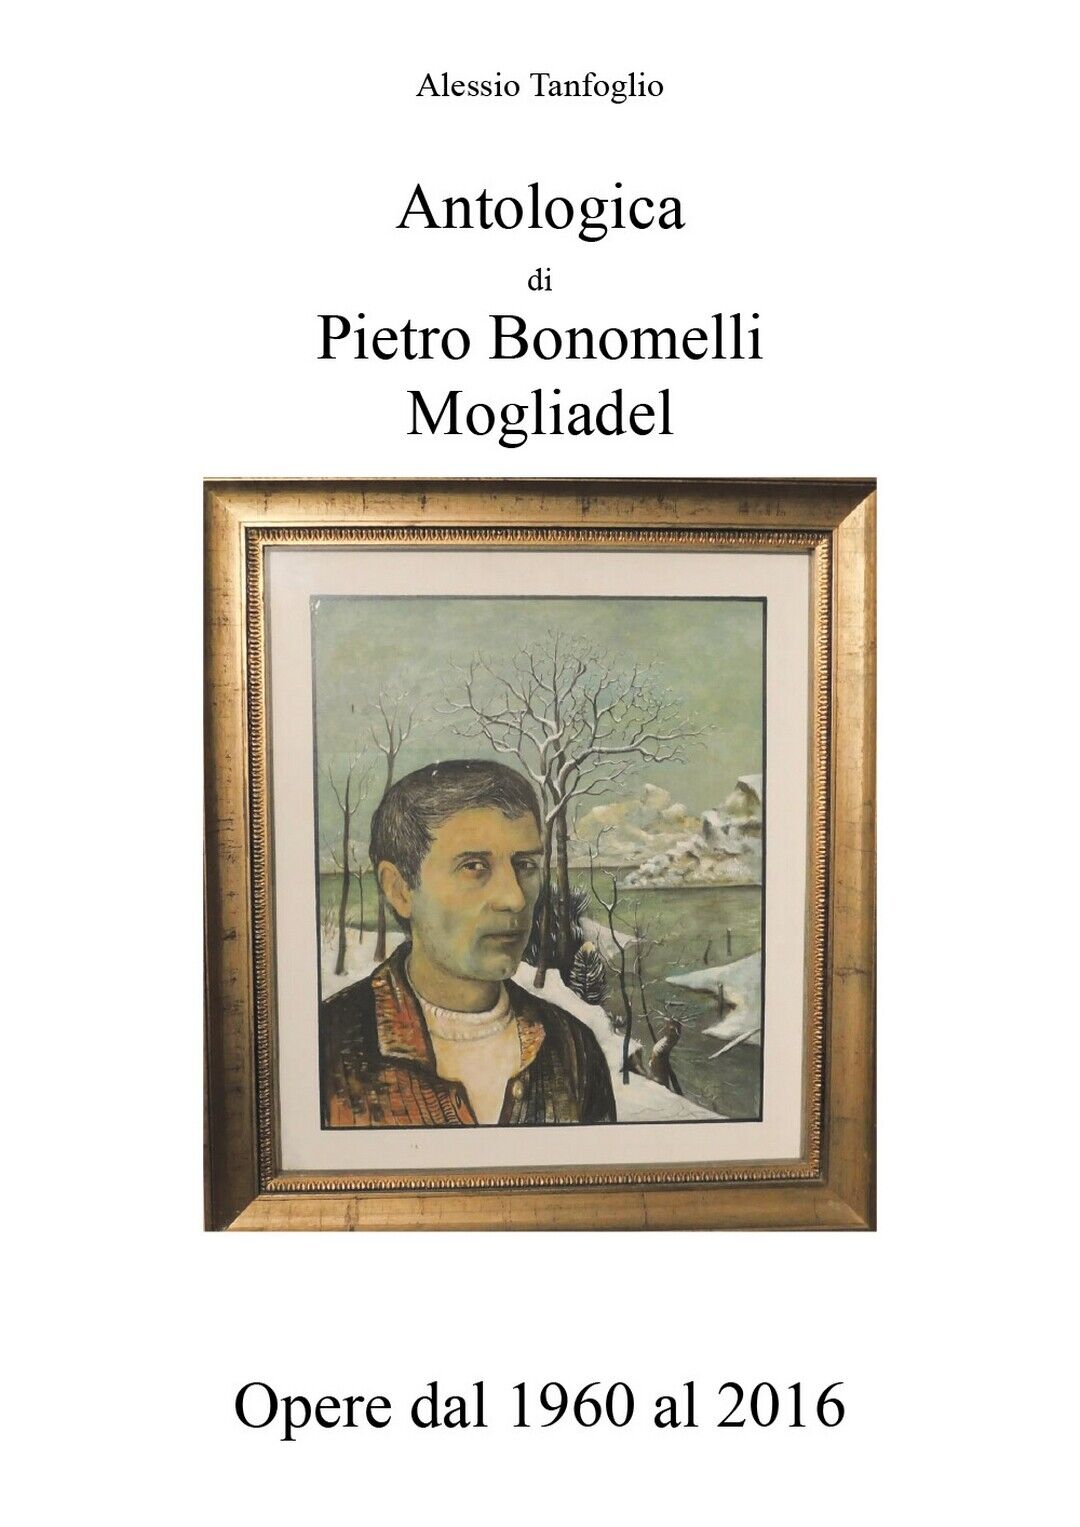 Antologica di Pietro Bonomelli-Mogliadel, Opere dal 1960 al 2016 (Tanfoglio) libro usato